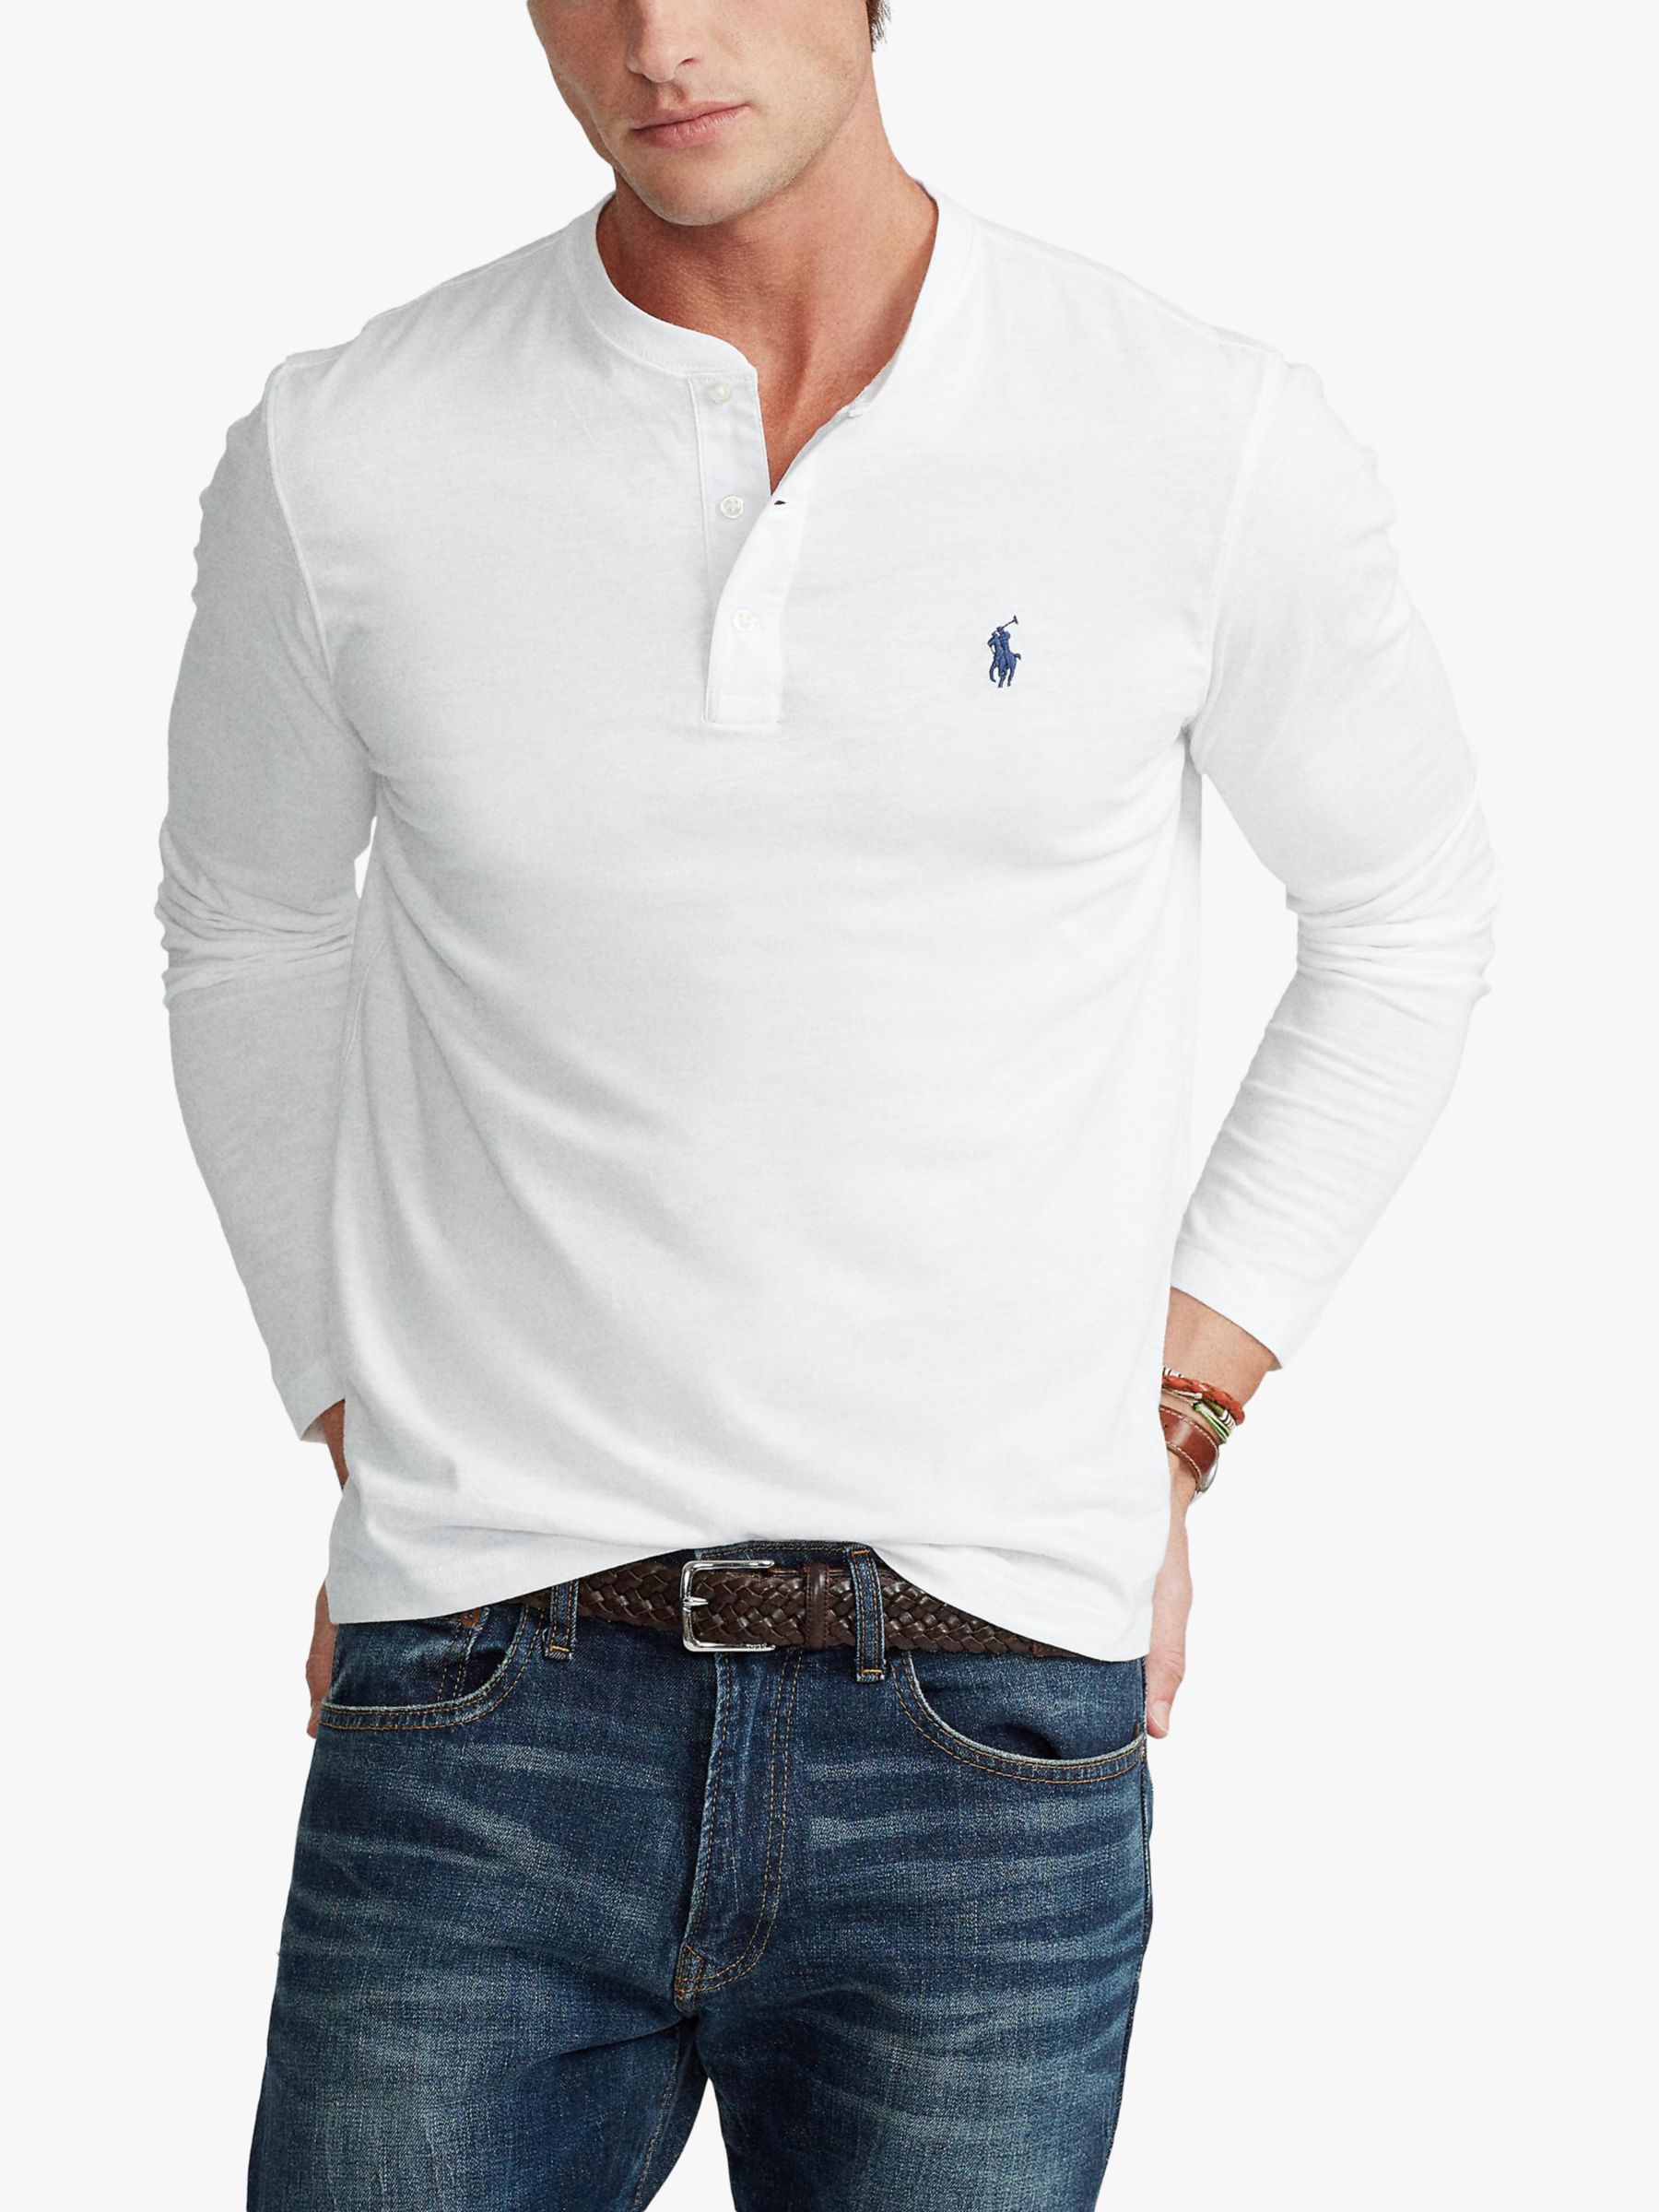 Polo Ralph Lauren Henley Long Sleeve T-Shirt at John Lewis & Partners